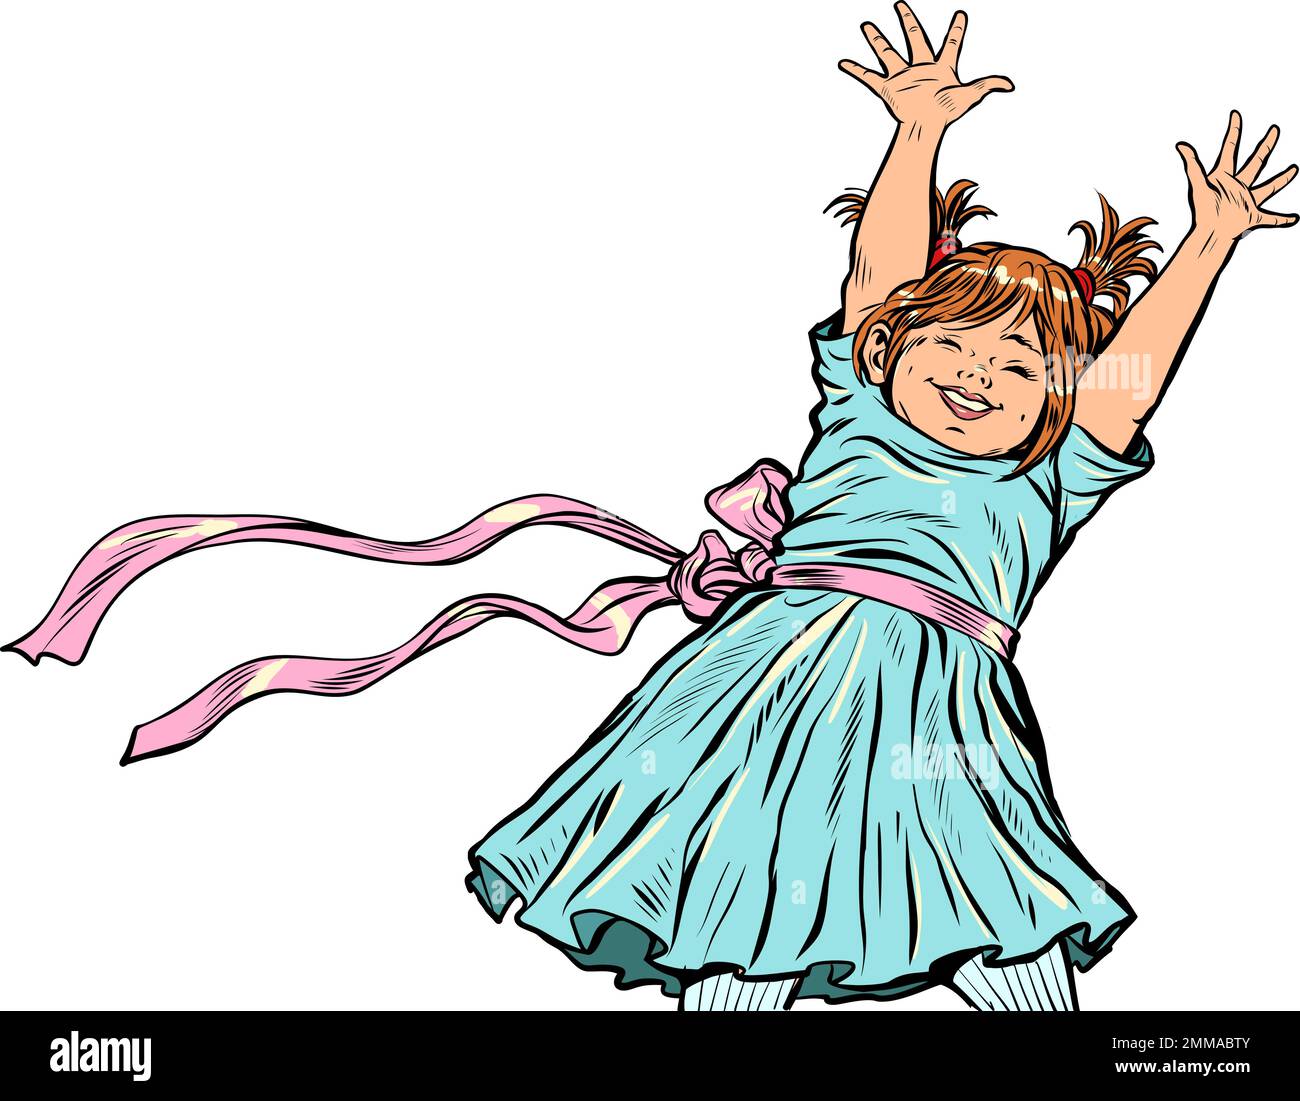 Lächelndes kleines Mädchen hob ihre Hände hoch. Frohe Kindheit. Pop Art Retro Stock Vektor